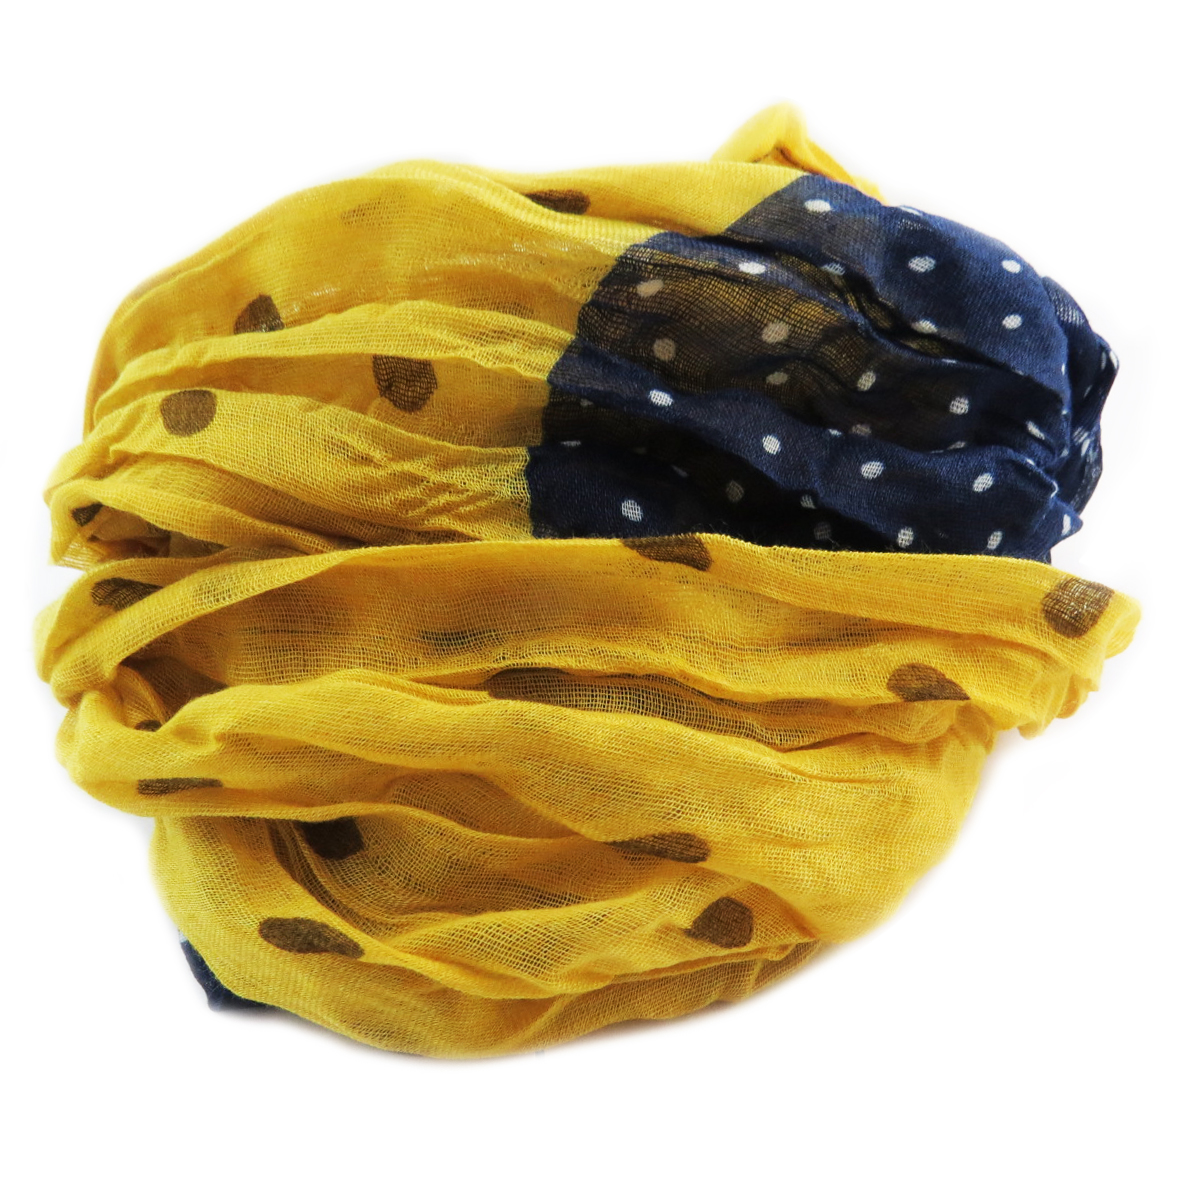 Echarpe coton \'Petits Pois\' jaune marine - 50x160 cm - [Q5265]